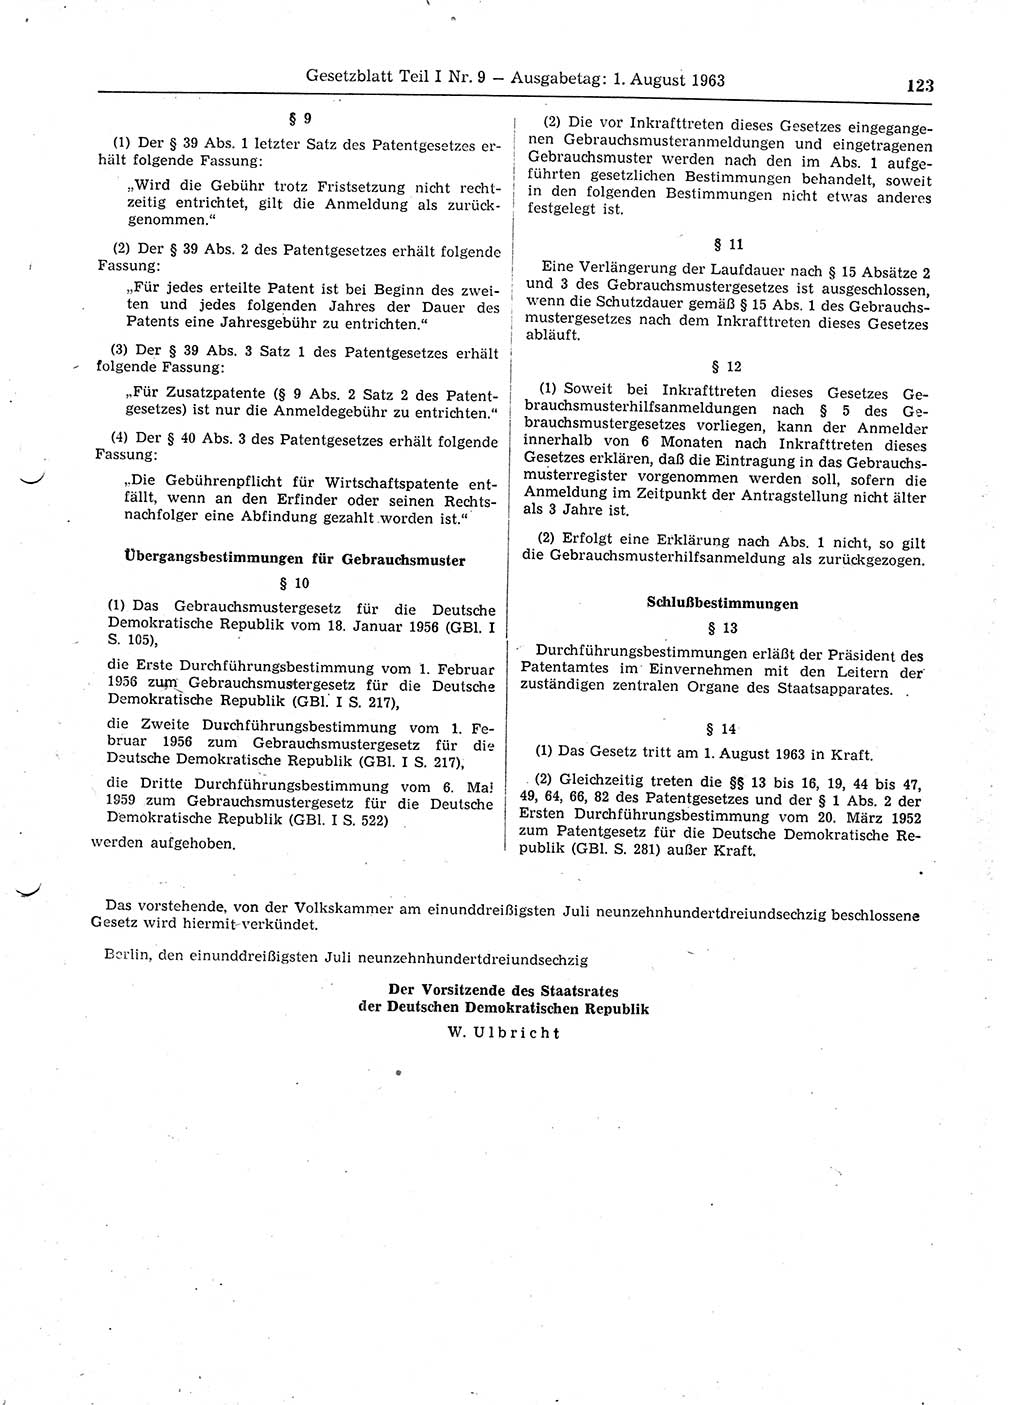 Gesetzblatt (GBl.) der Deutschen Demokratischen Republik (DDR) Teil Ⅰ 1963, Seite 123 (GBl. DDR Ⅰ 1963, S. 123)